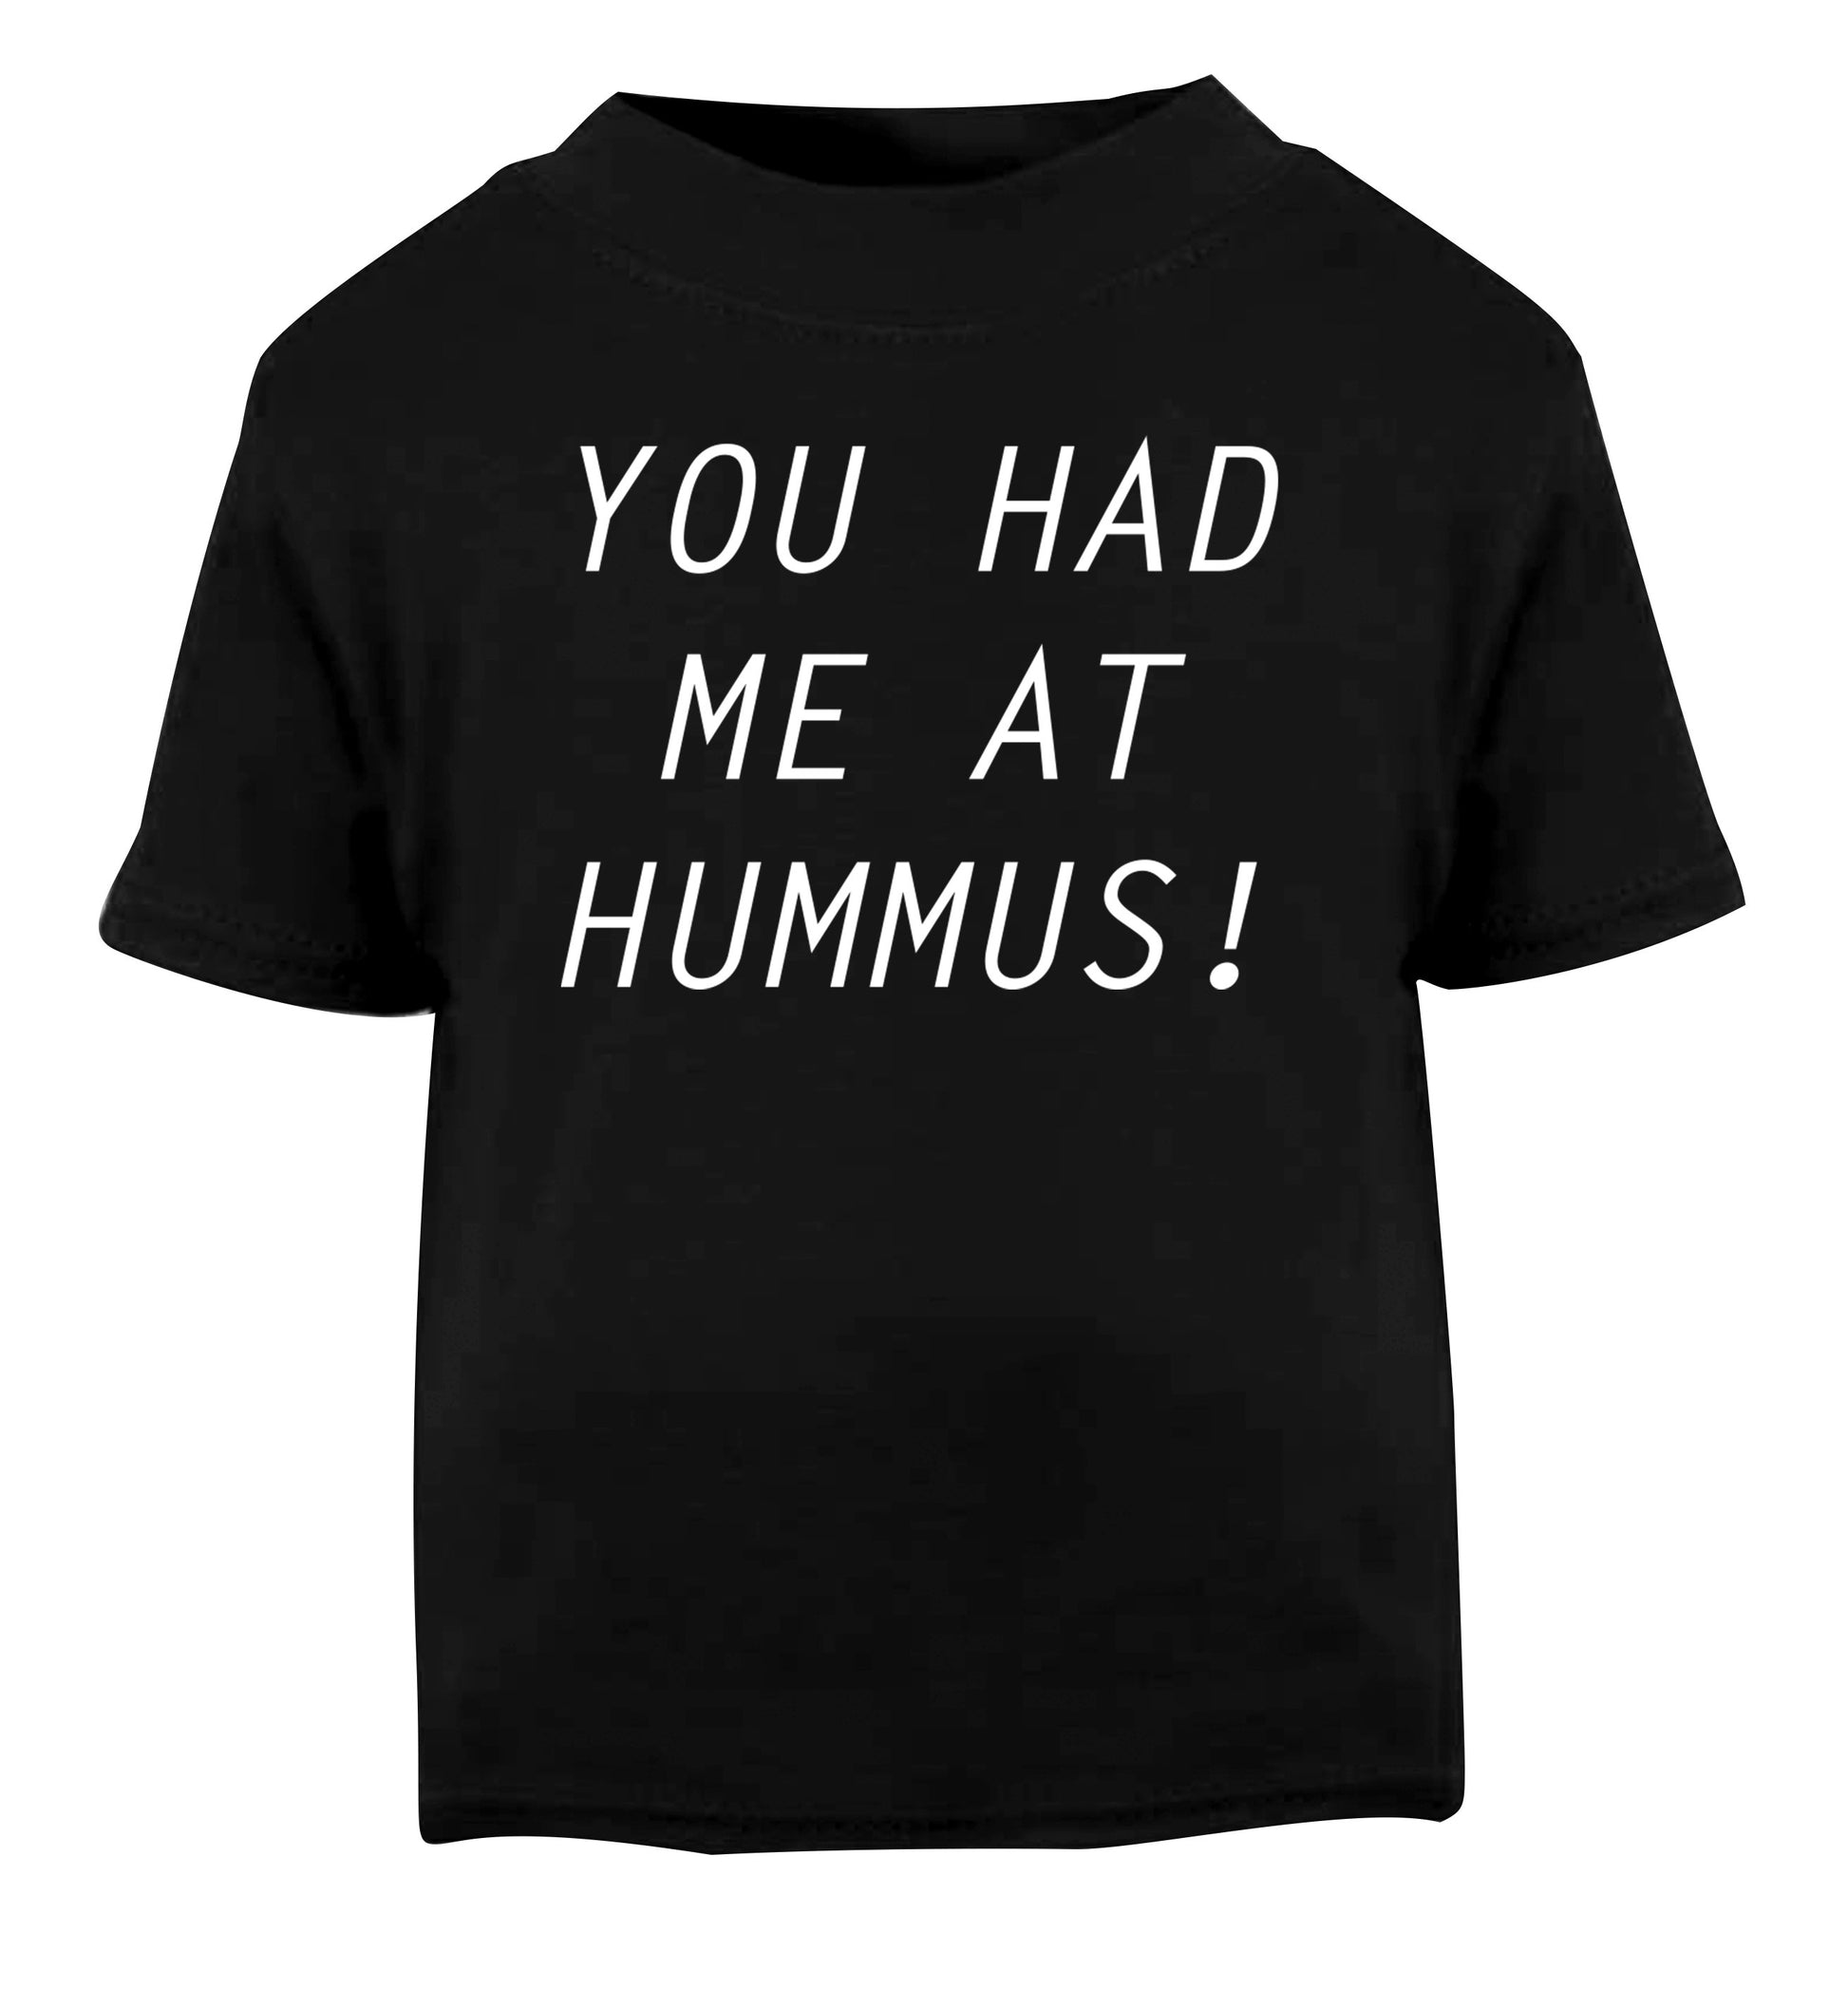 You had me at hummus Black Baby Toddler Tshirt 2 years